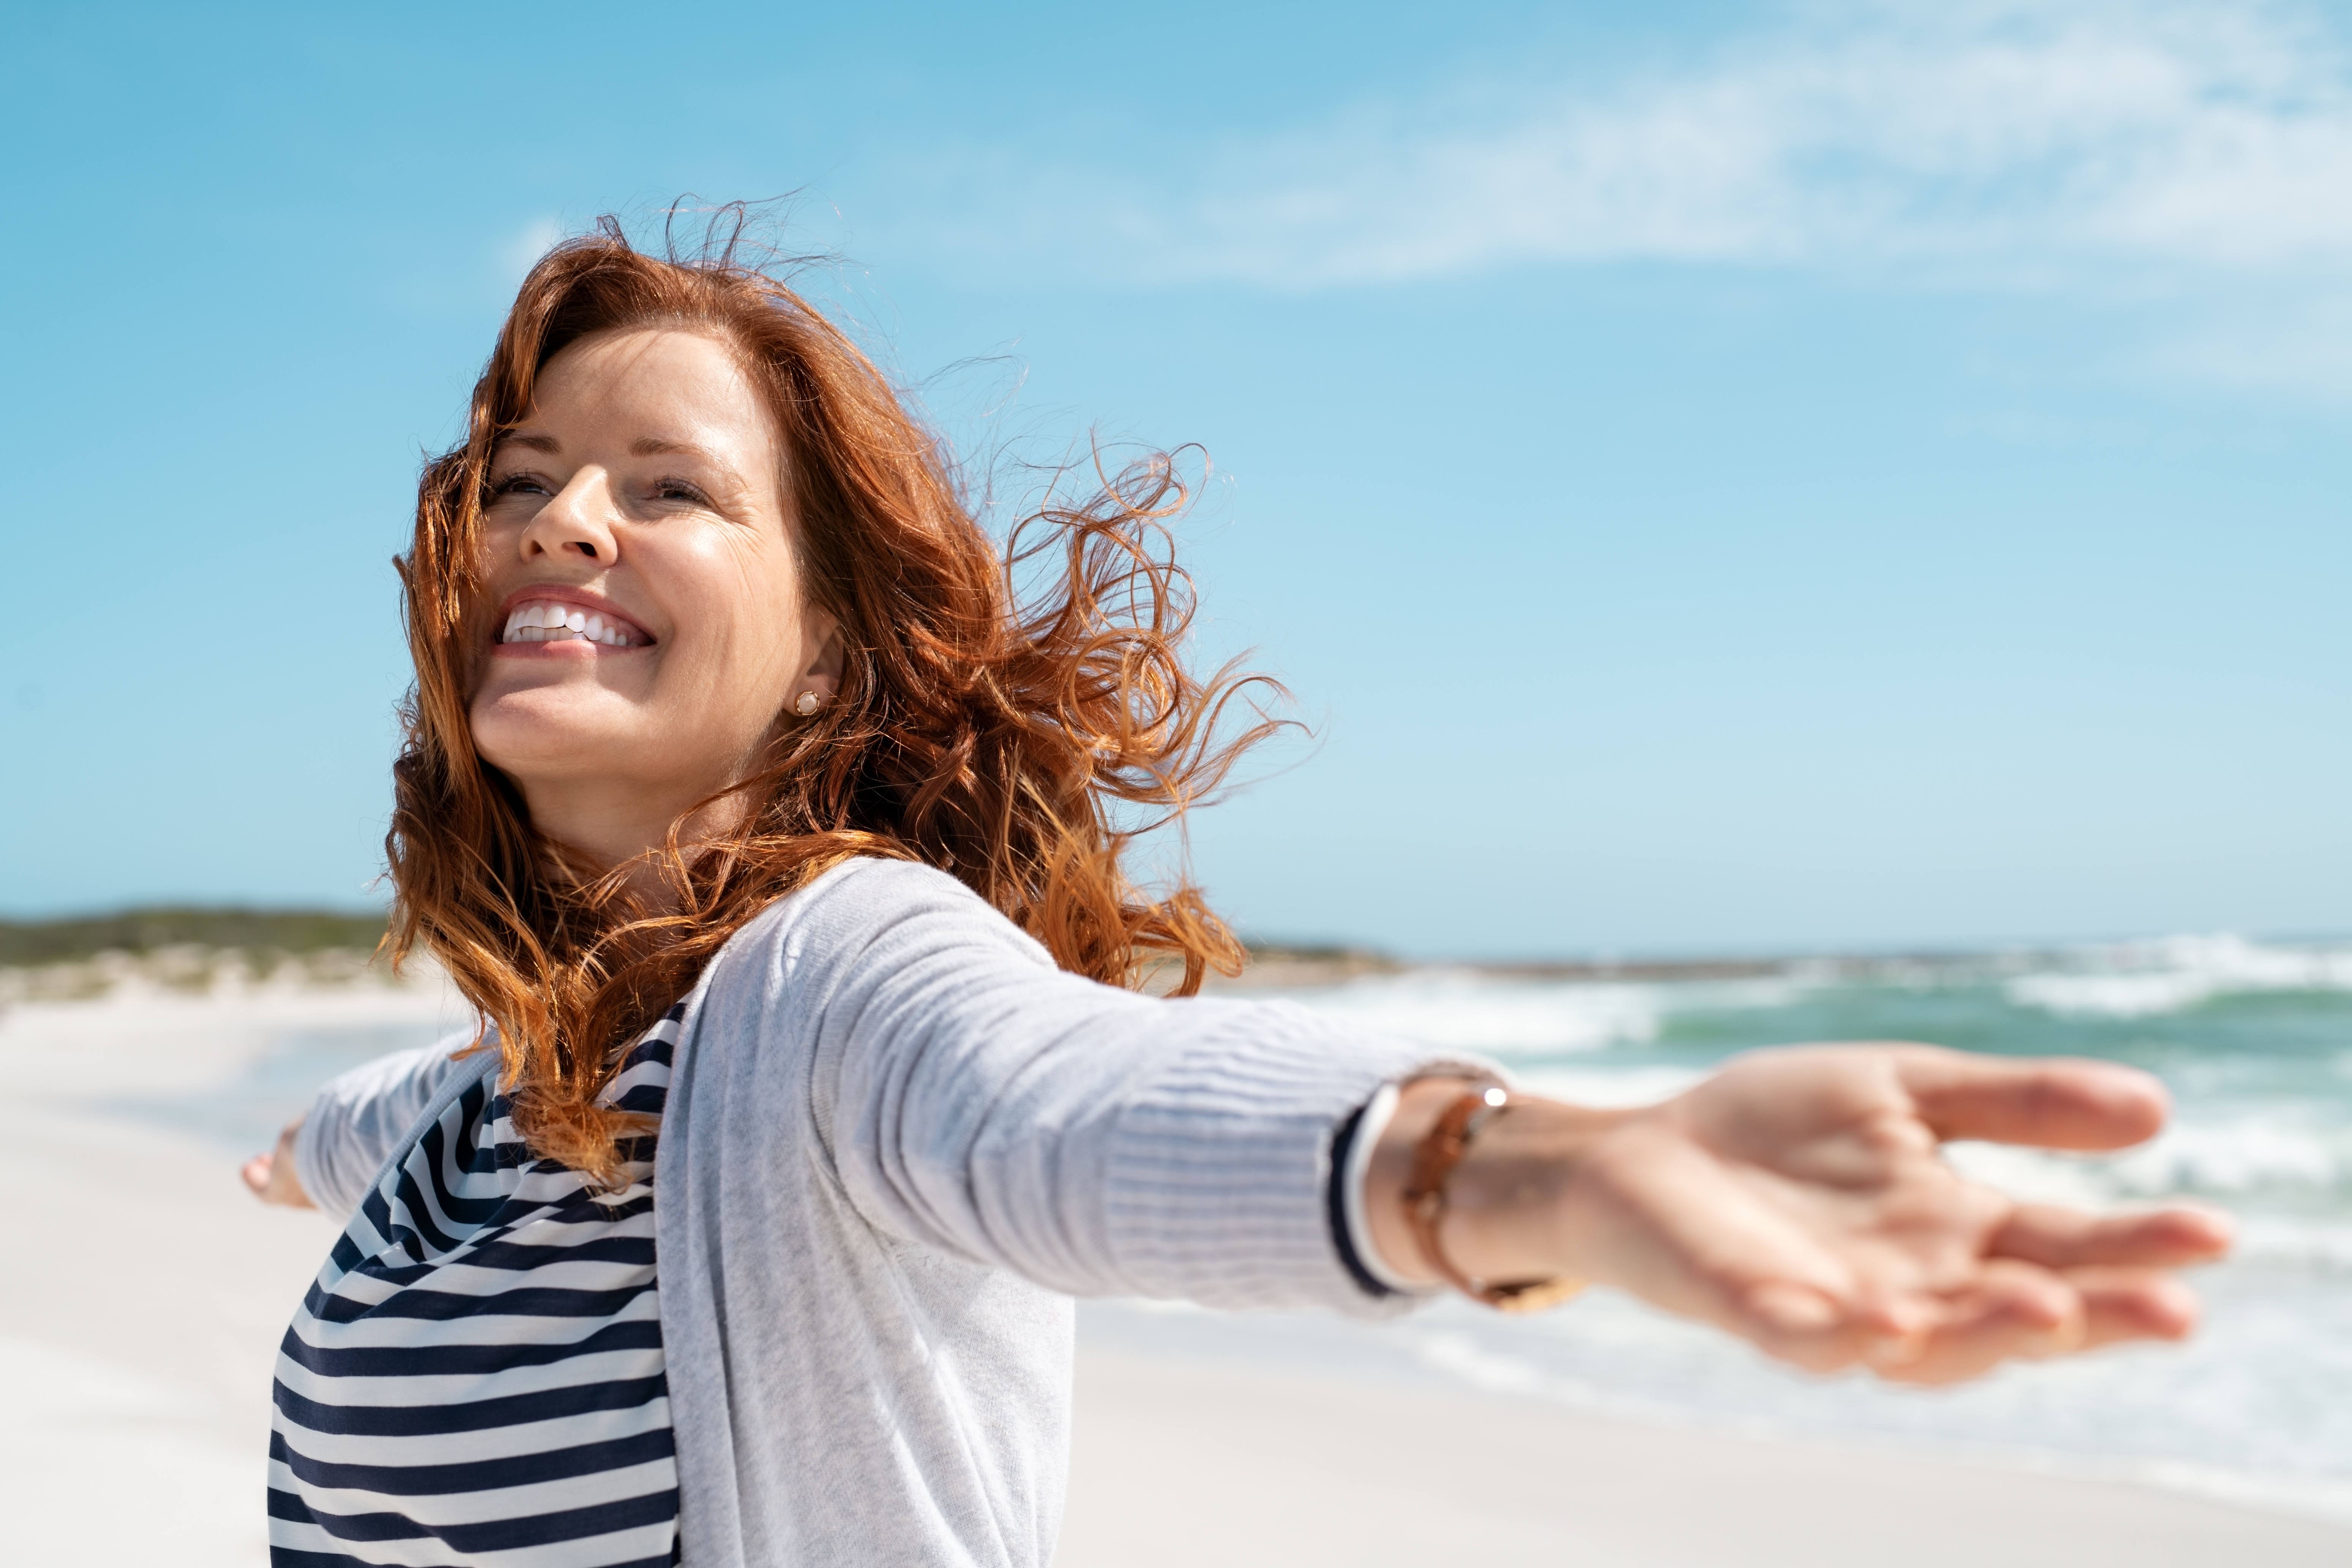 A happy woman on the seaside | Source: Shutterstock